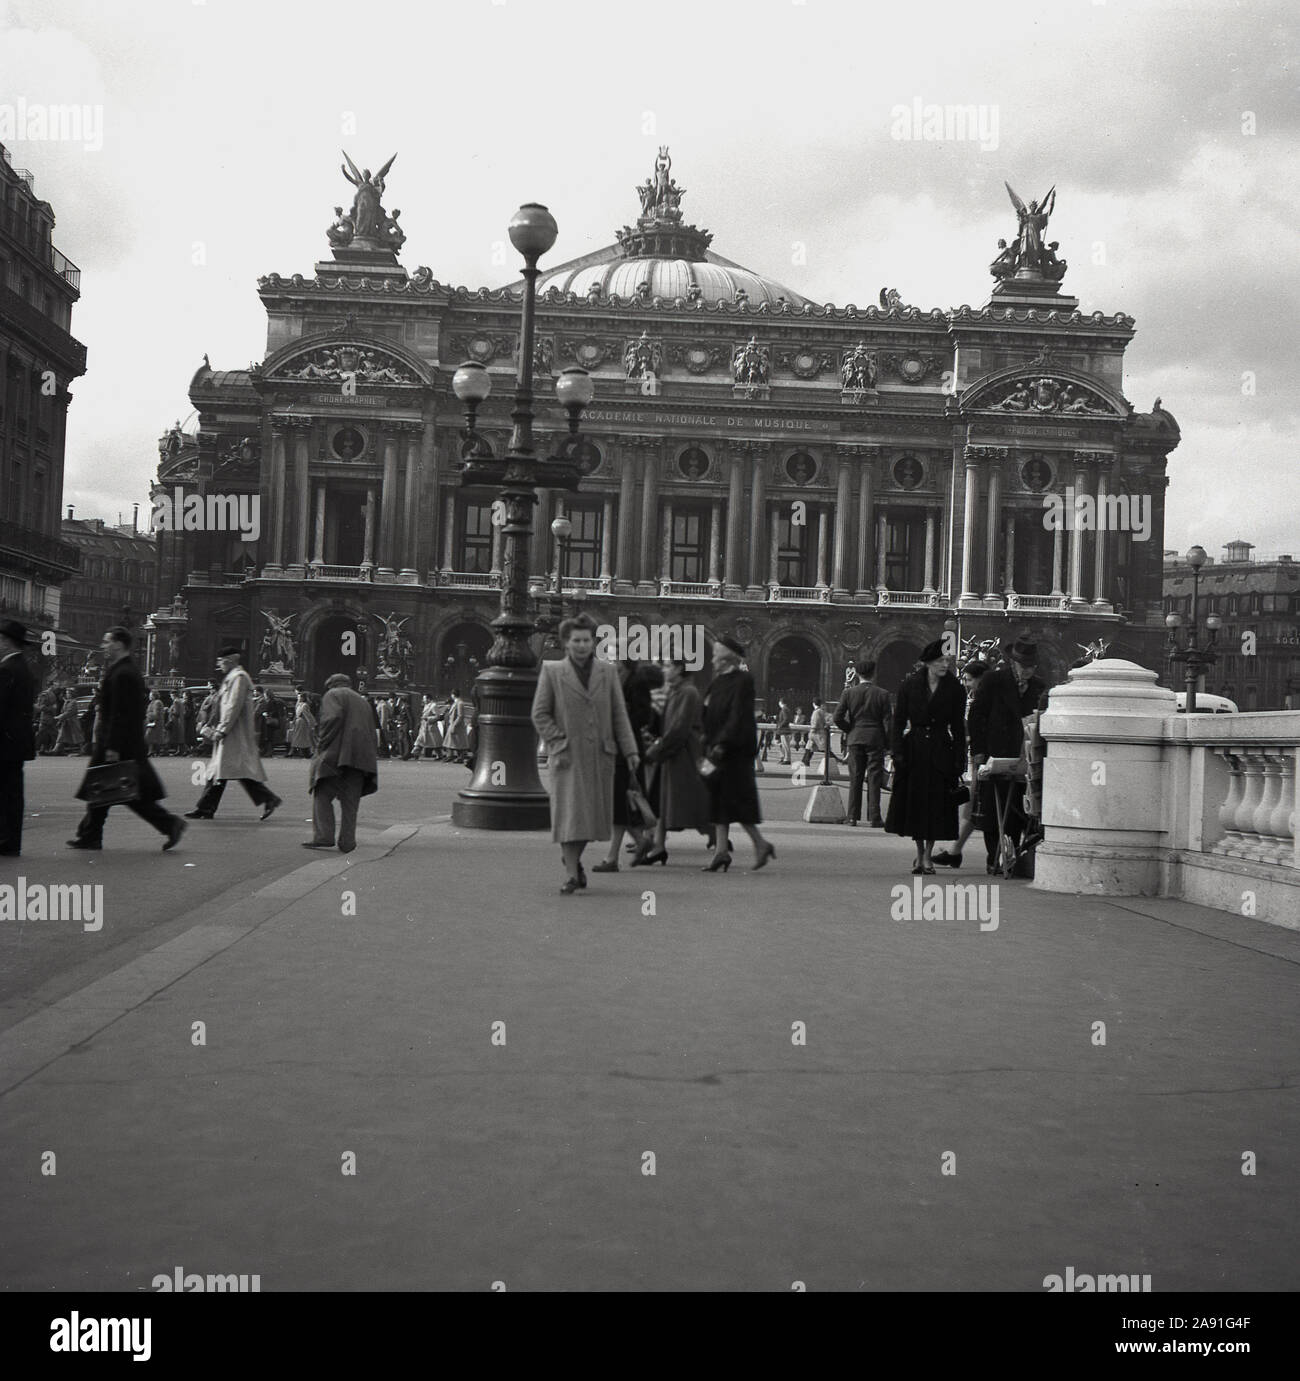 Les années 1950, vue historique du Palais Garnier ou de l'Opéra, place de l'Opéra, Paris, France, construit dans le style architectural baroque revival en 1875 sur instruction de l'empereur Napoléon III Le bâtiment a été conçu par Charles Garnier. Banque D'Images